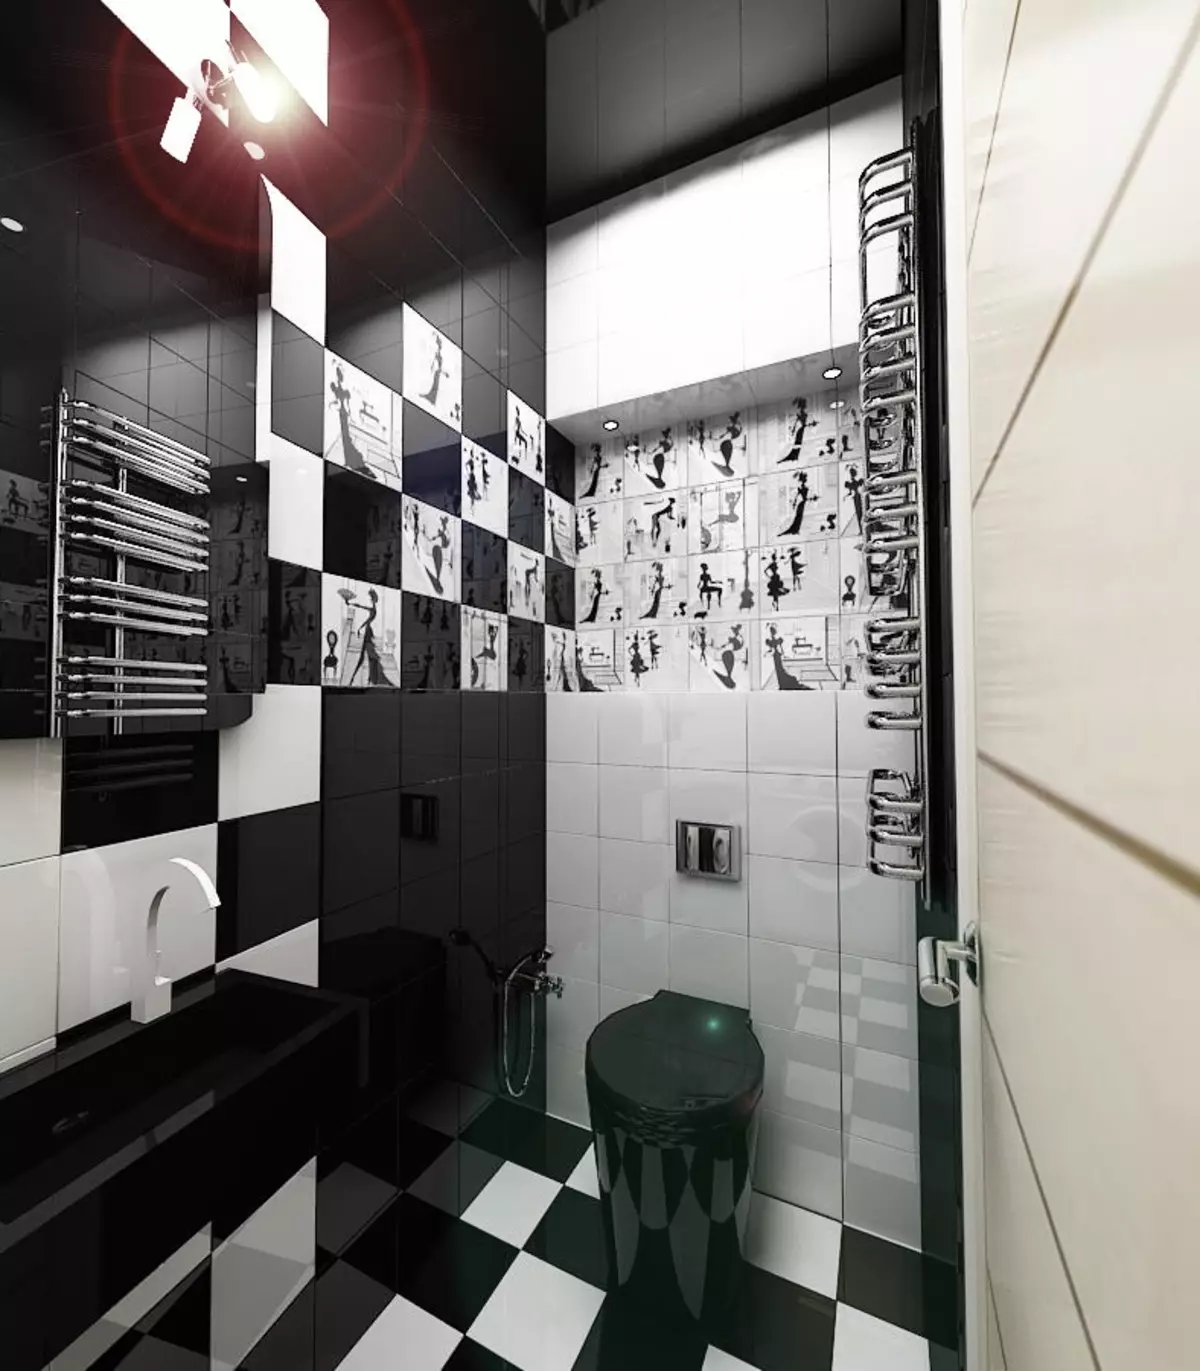 Swart toilet (67 foto's): Toiletontwerp in swart en wit kleure, seleksie van 'n donker kleur toilet in 'n woonstel, afwerking met swart en rooi teëls 10501_22